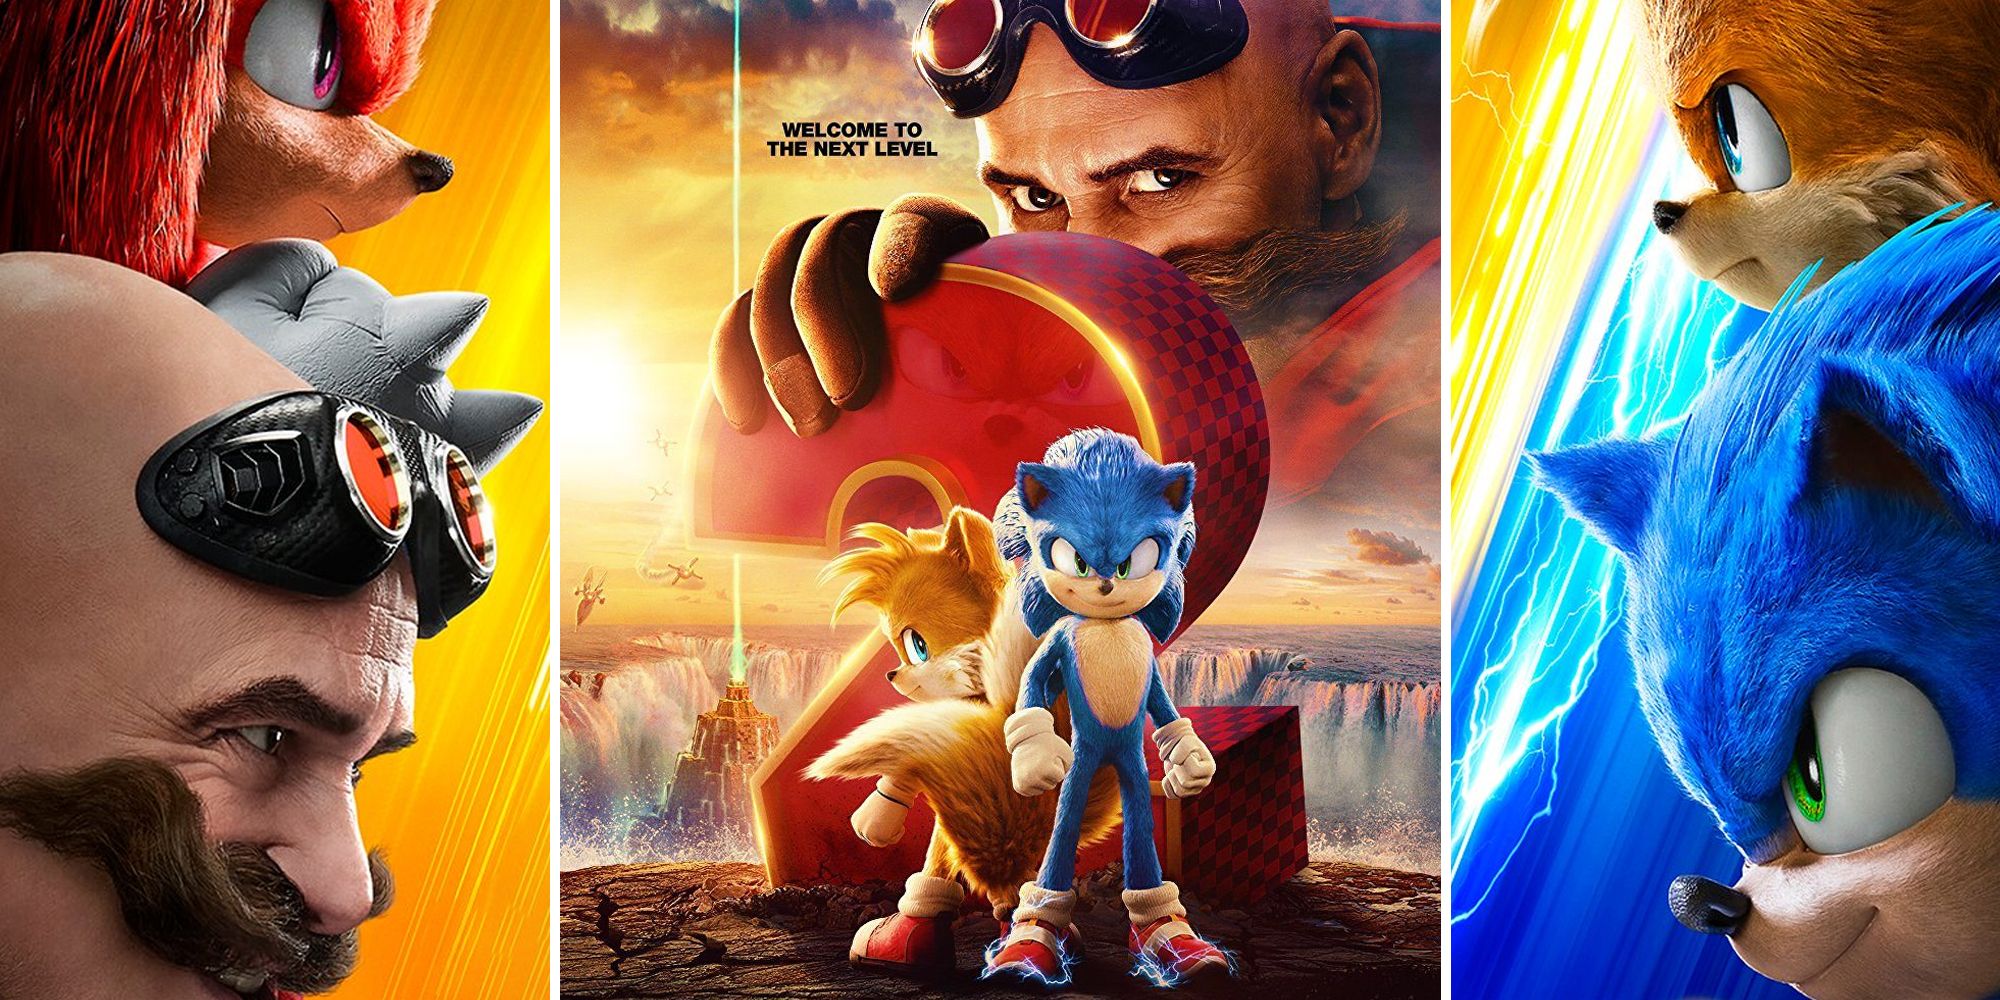 Novo cartaz de Sonic 2: O Filme recria capa de game clássico